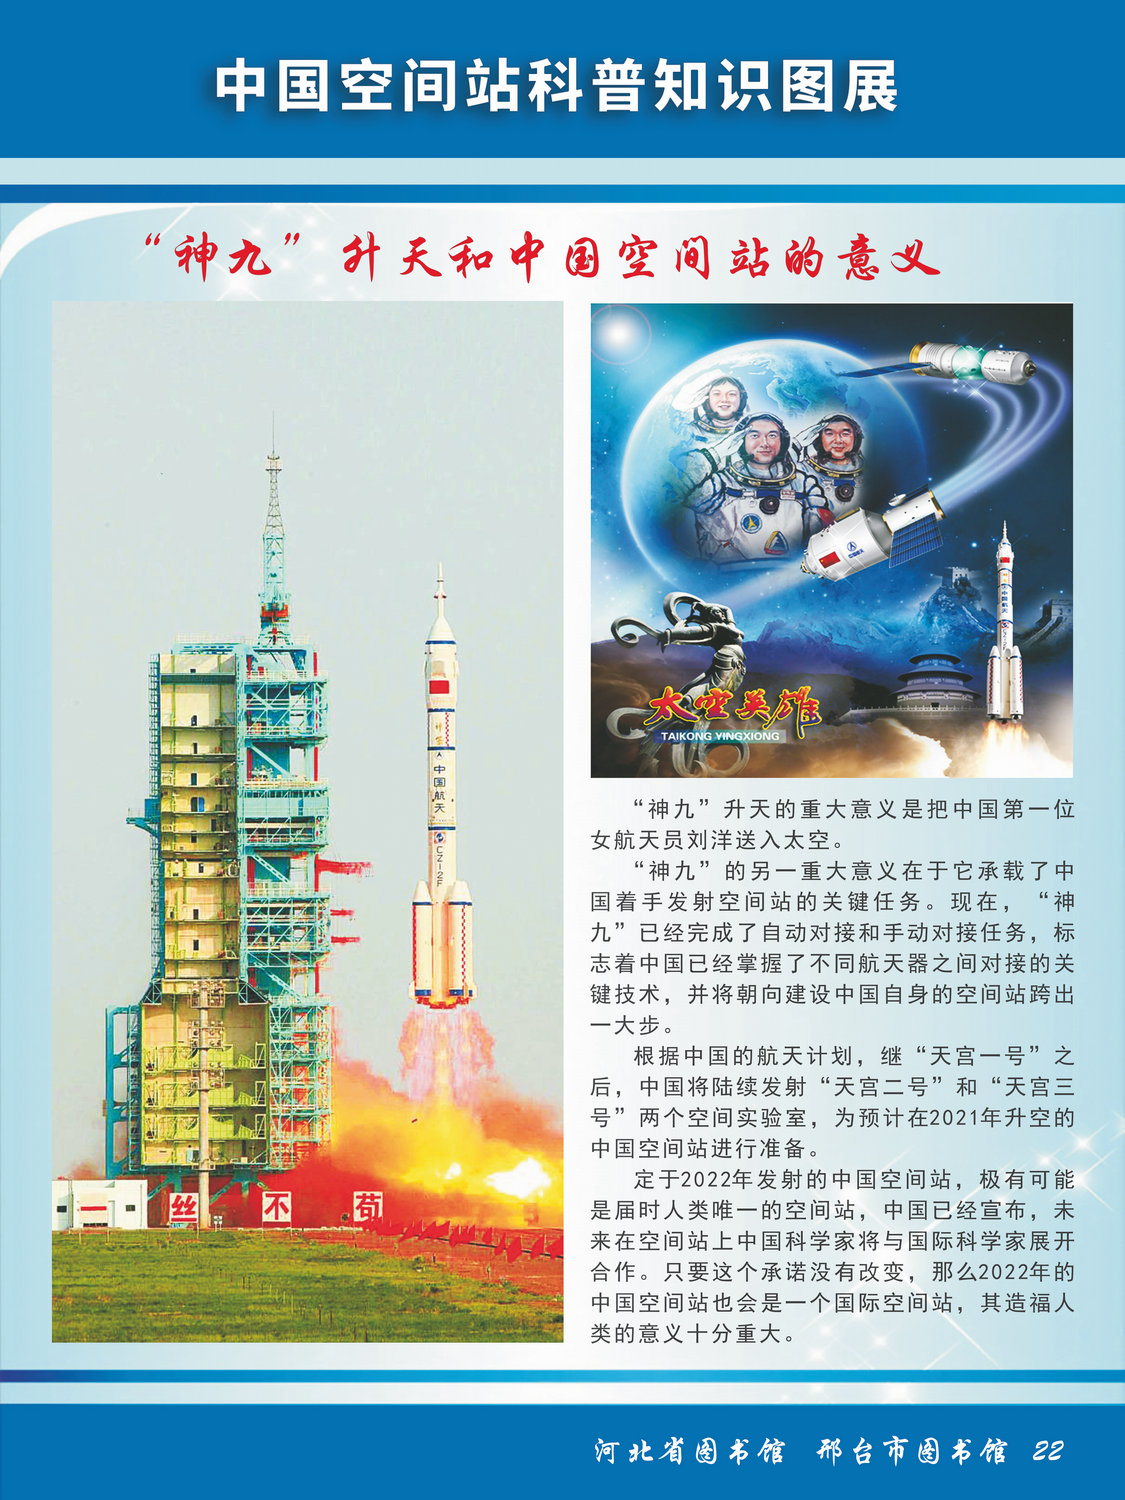 中国空间站科普知识图文展_图22